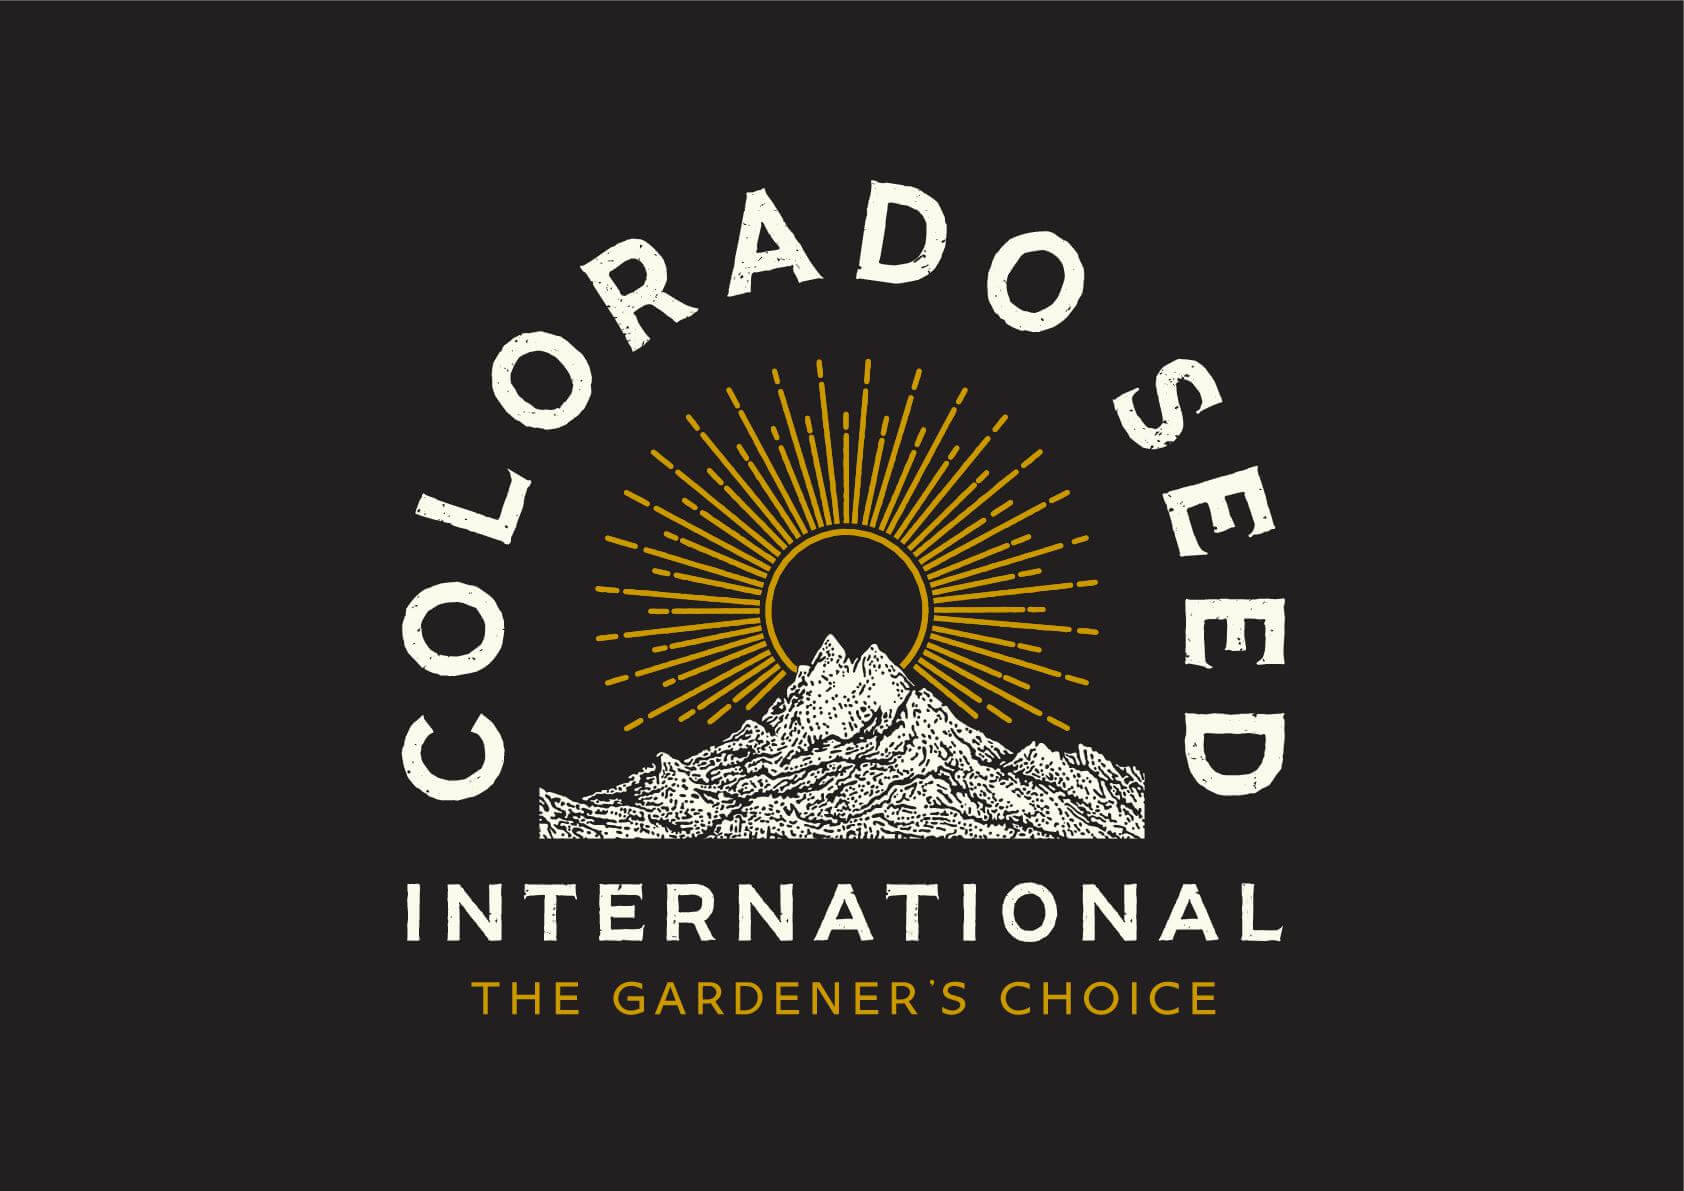 Presentación exclusiva de Colorado Seed en Alchimia